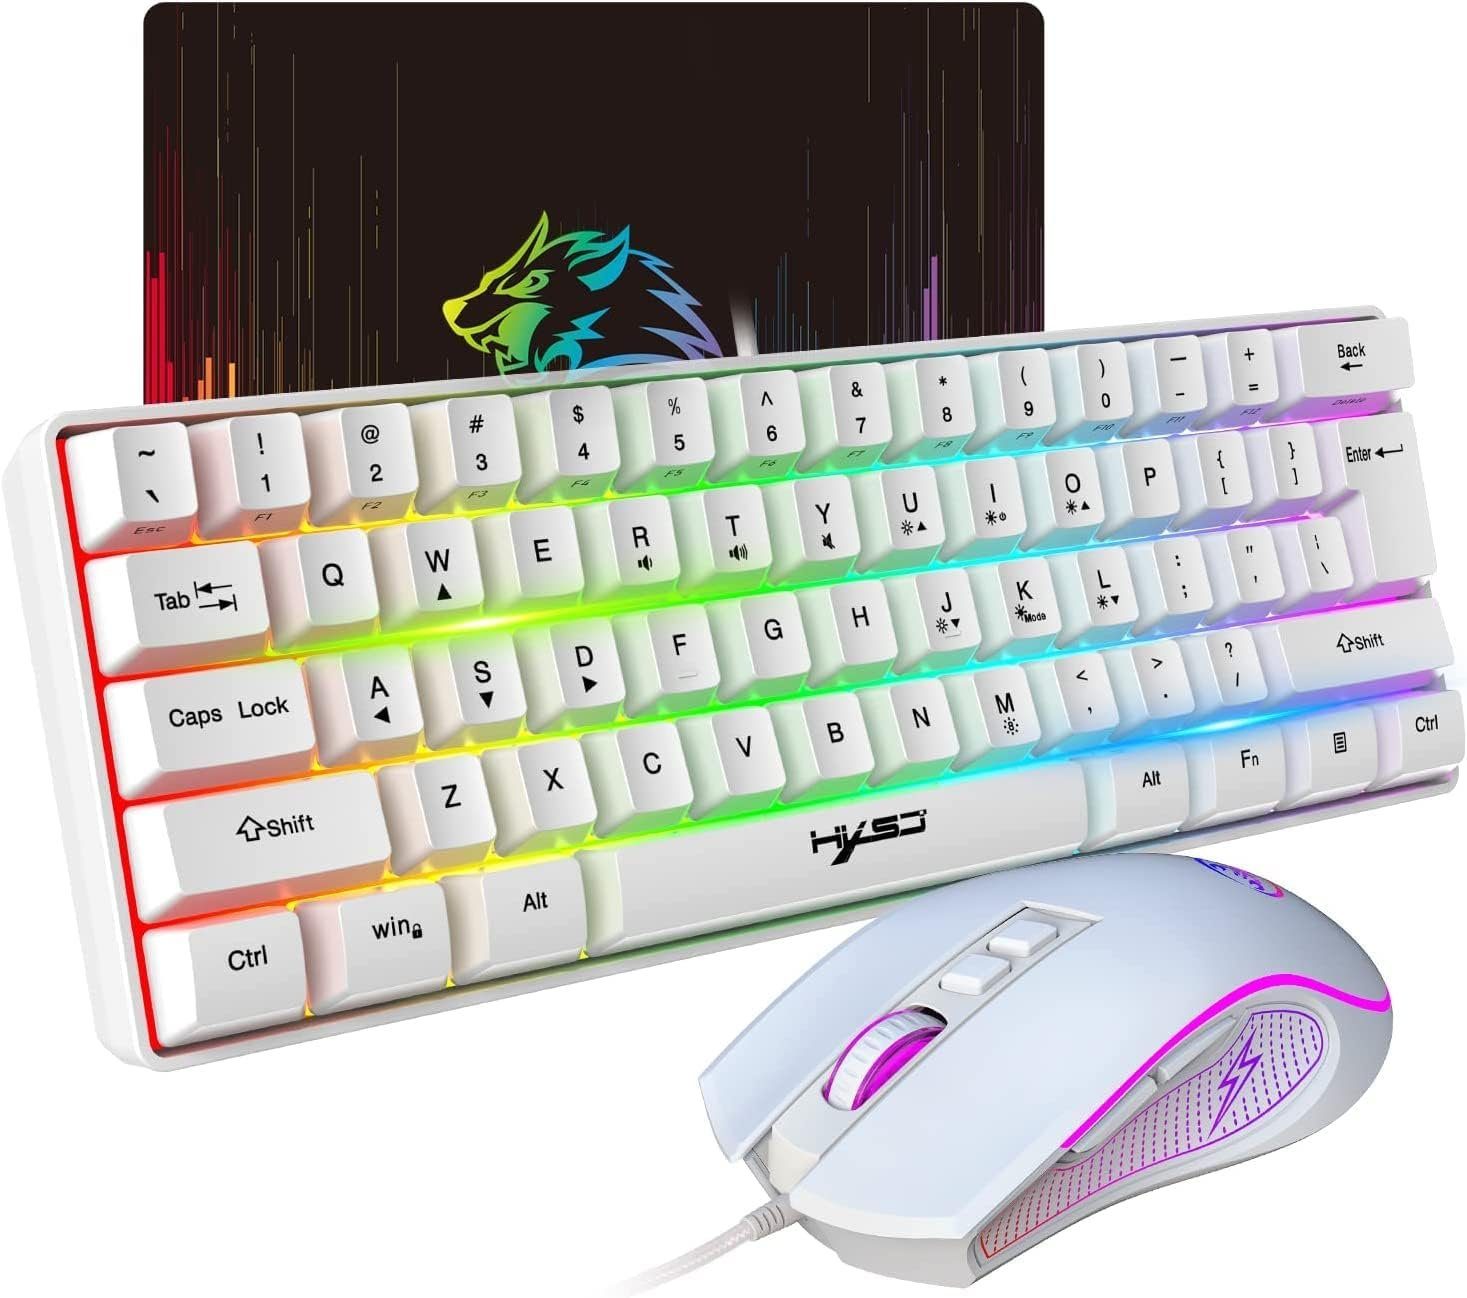 HXSJ 60% Kompakte Tastatur,61 Tasten,TKL Layout,RGB-Beleuchtung Tastatur- und Maus-Set, Optische Gaming-Sensormaus mit 7 Tasten,7-Farbiges LED-Licht